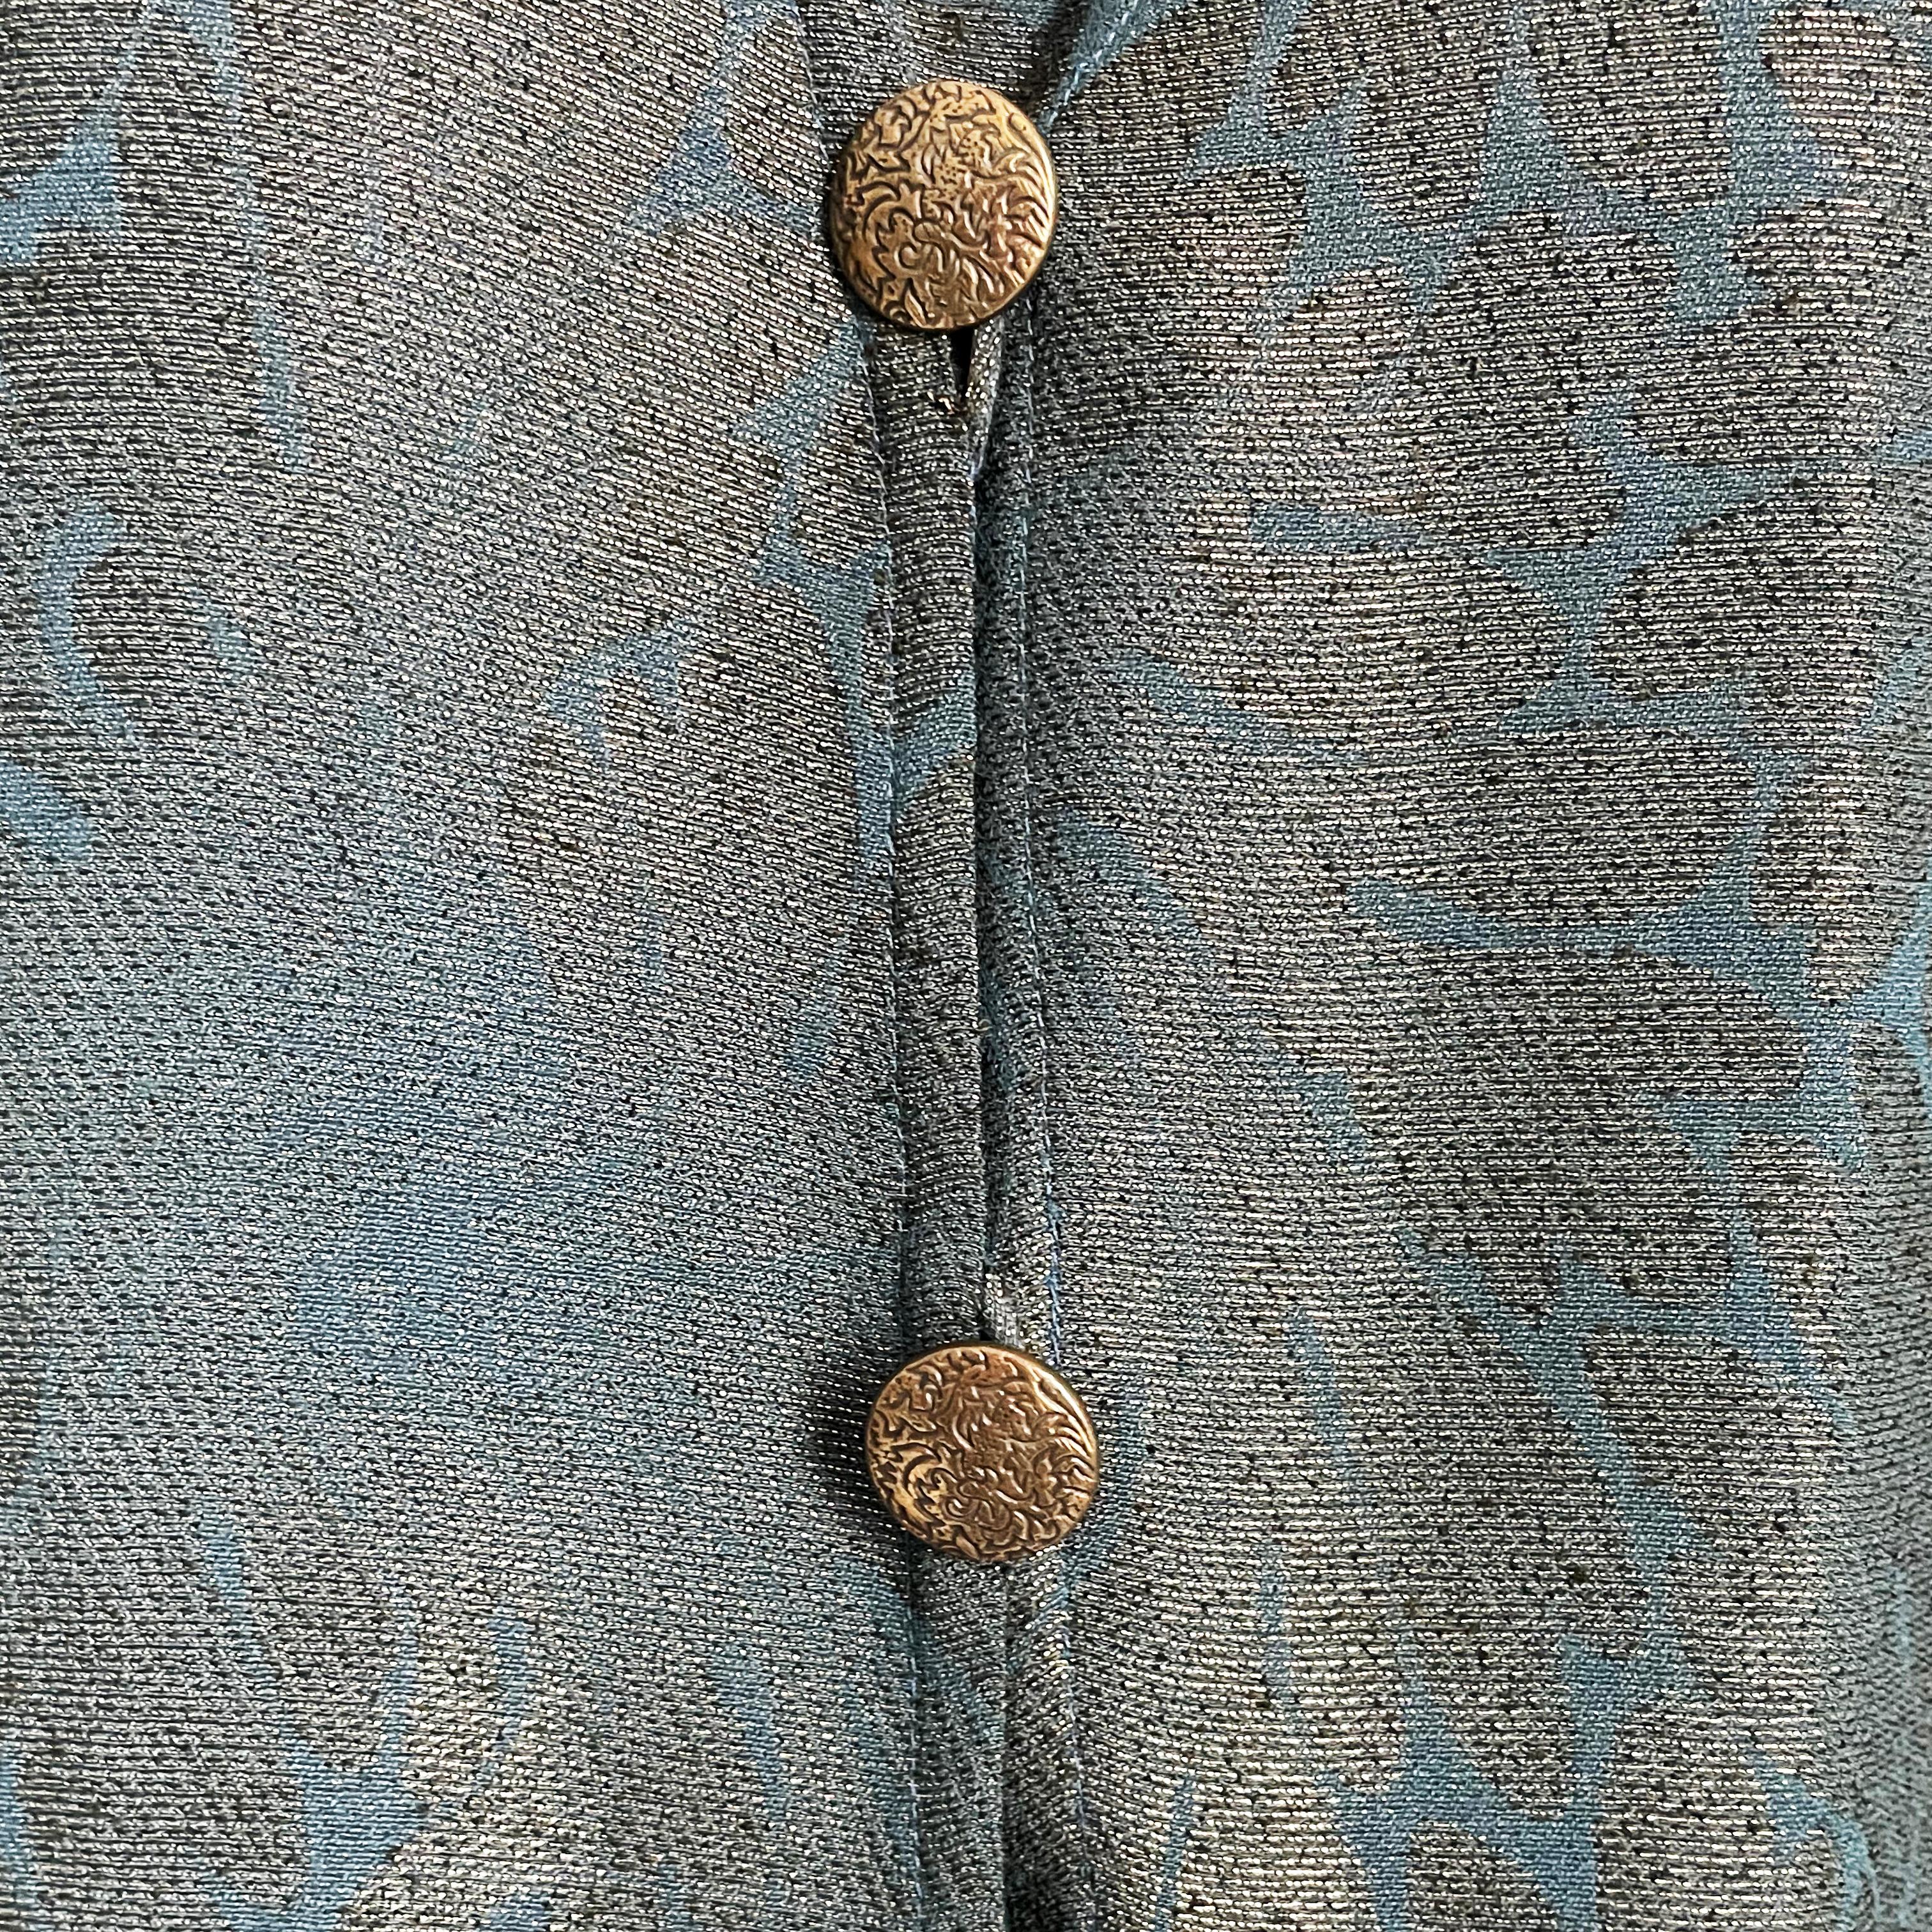 Vintage Holly Harp Long Jacket Pantsuit 3pc Set Metallic Floral Pattern M  1